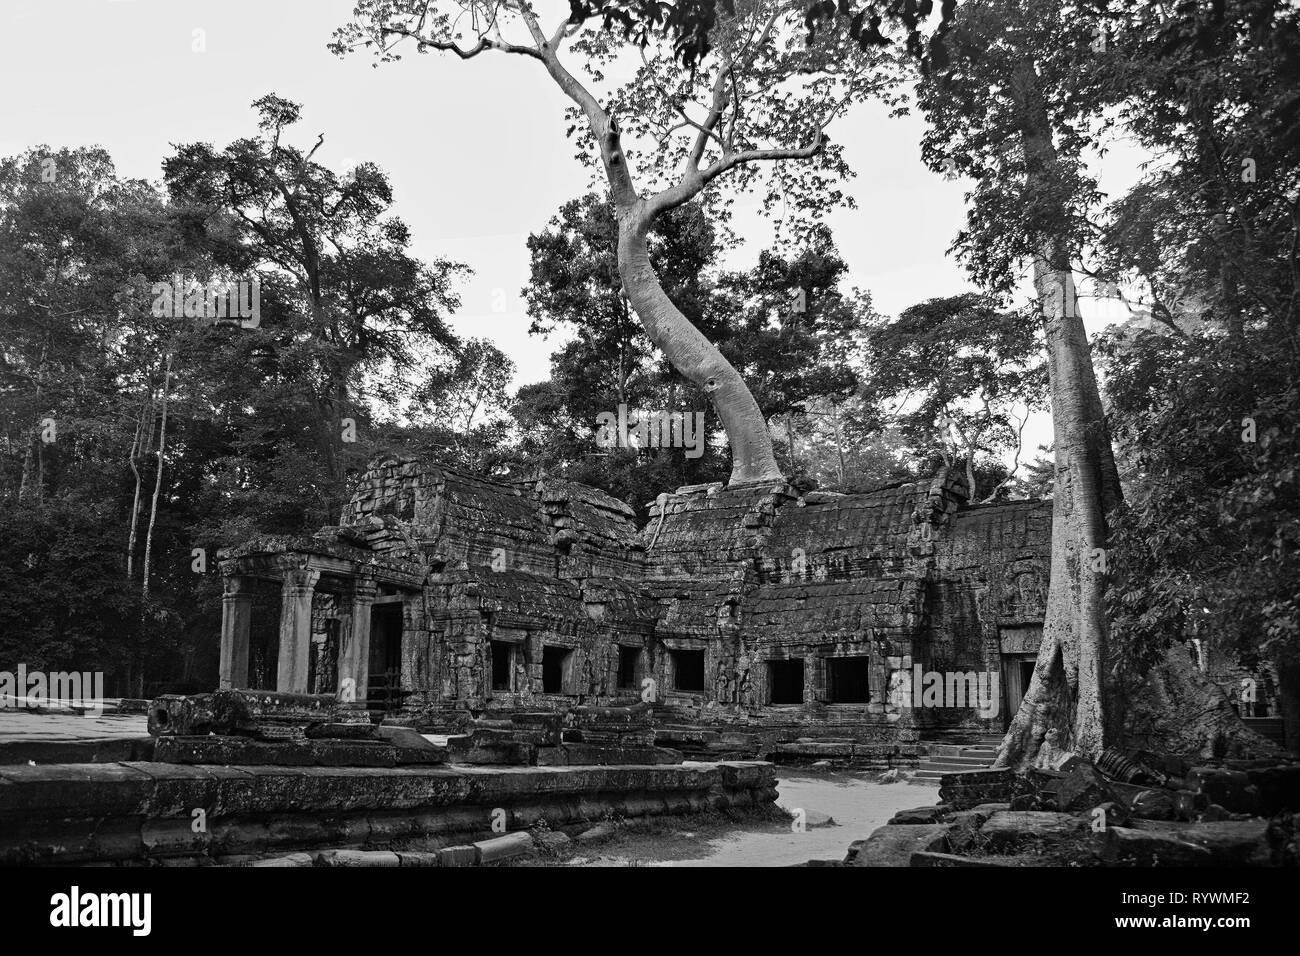 Am frühen Morgen, im östlichen gopura (Eingangstor) zum inneren Tempel Komplex, Ta Prohm, Angkor, Siem Reap, Kambodscha Stockfoto